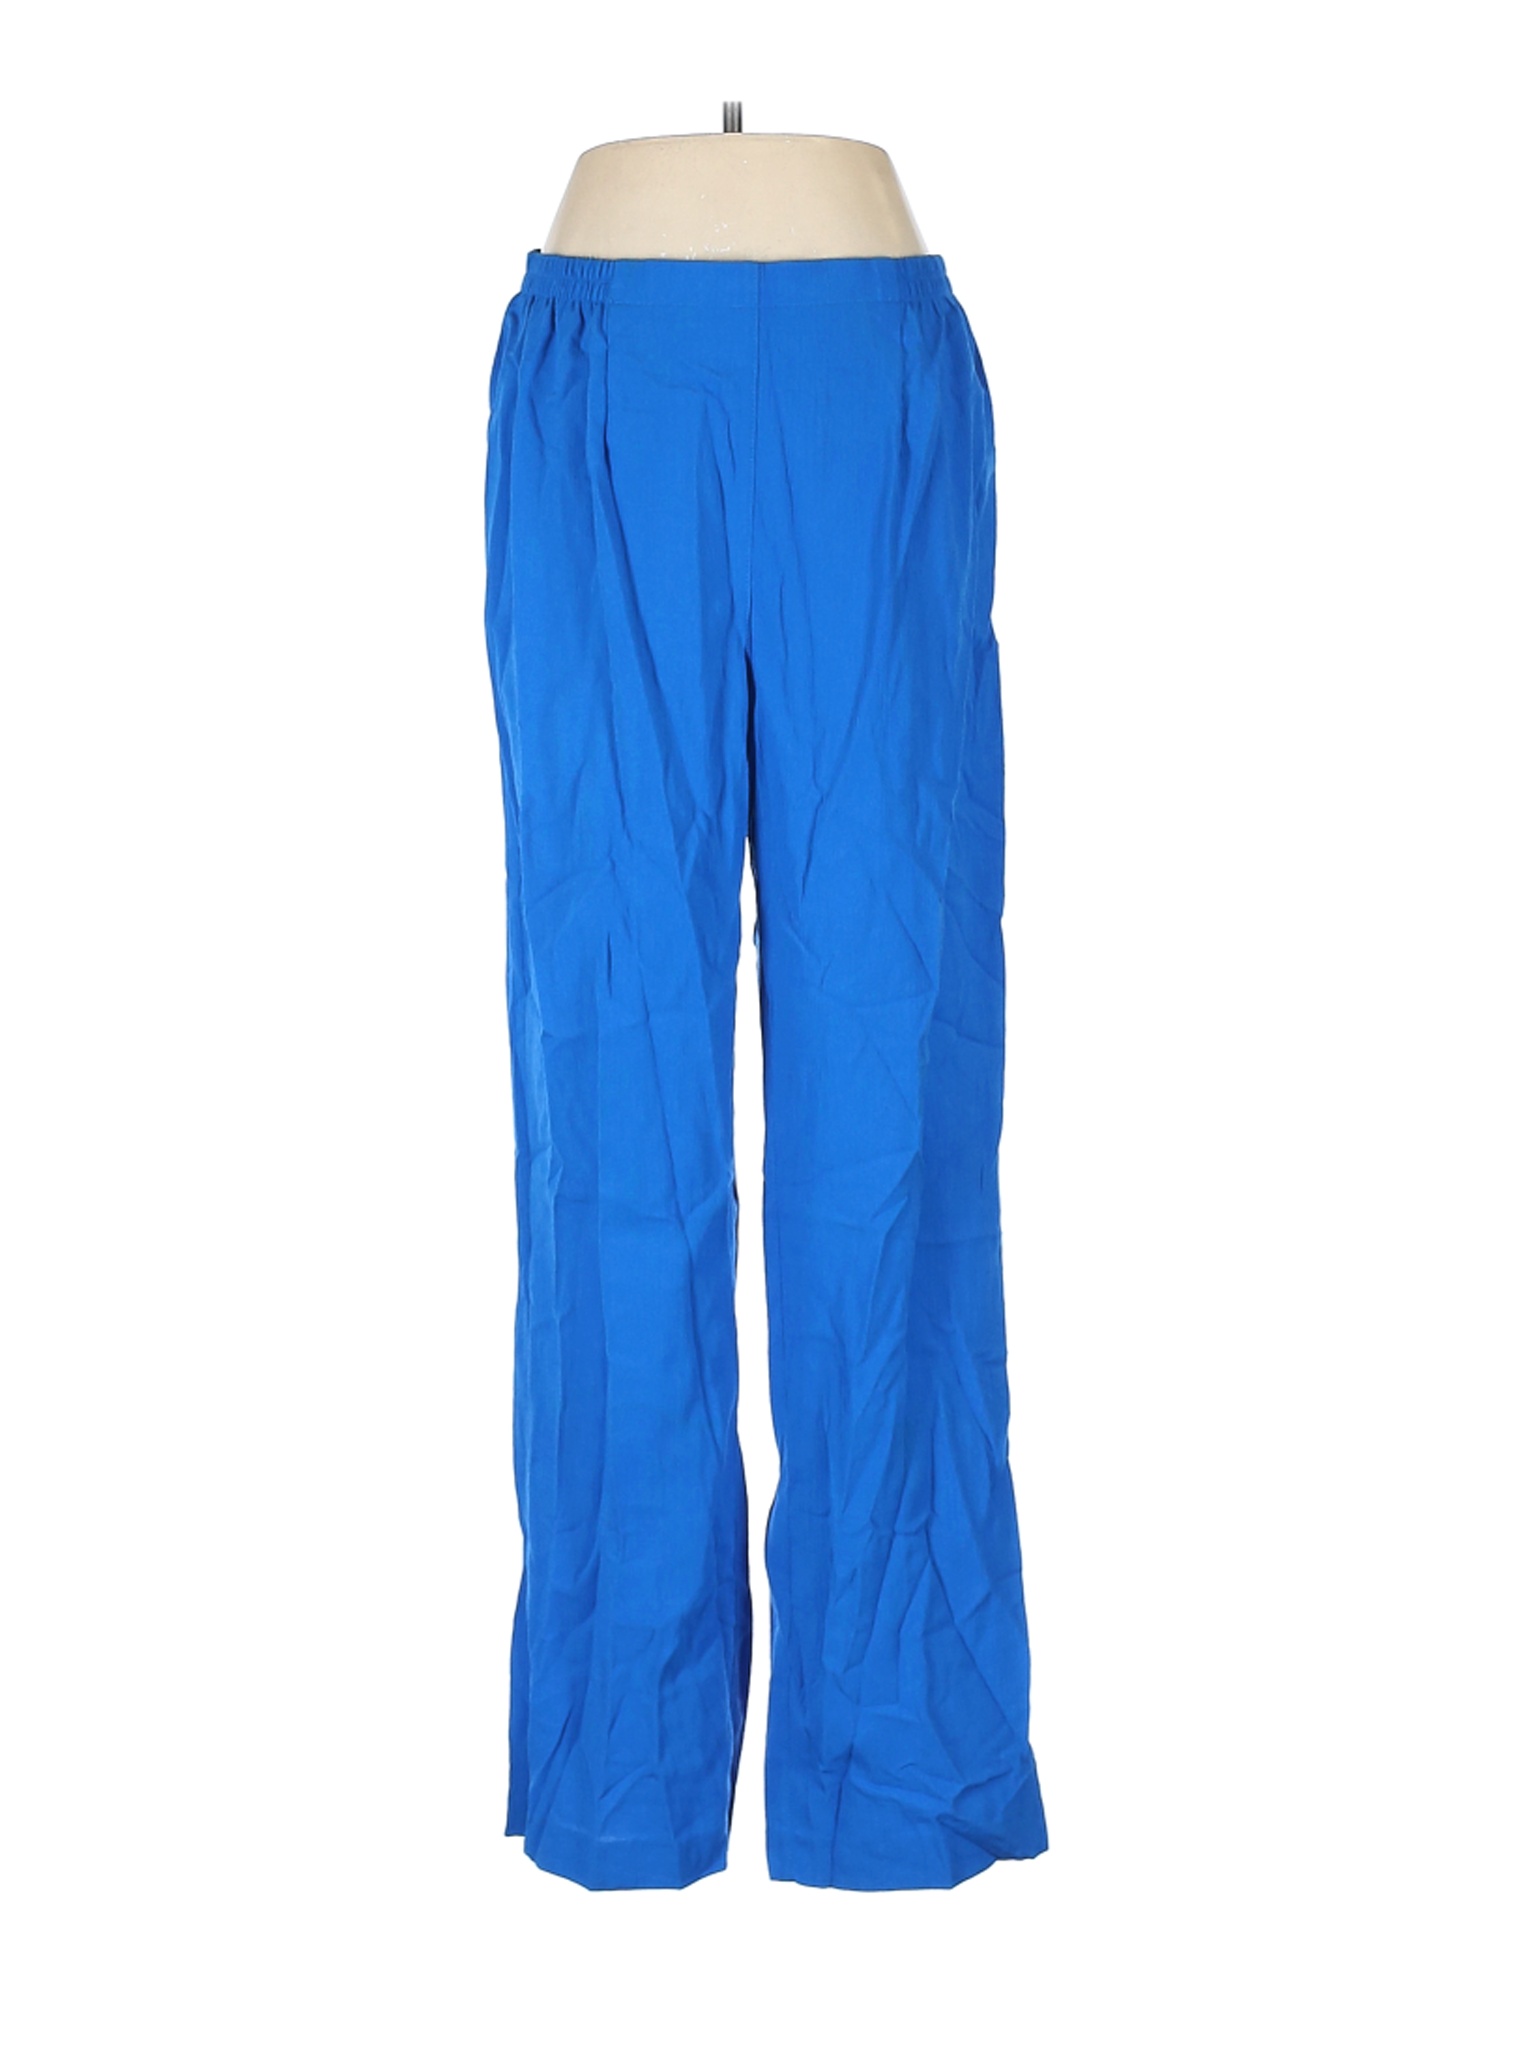 Draper's & Damon's Women Blue Casual Pants M | eBay